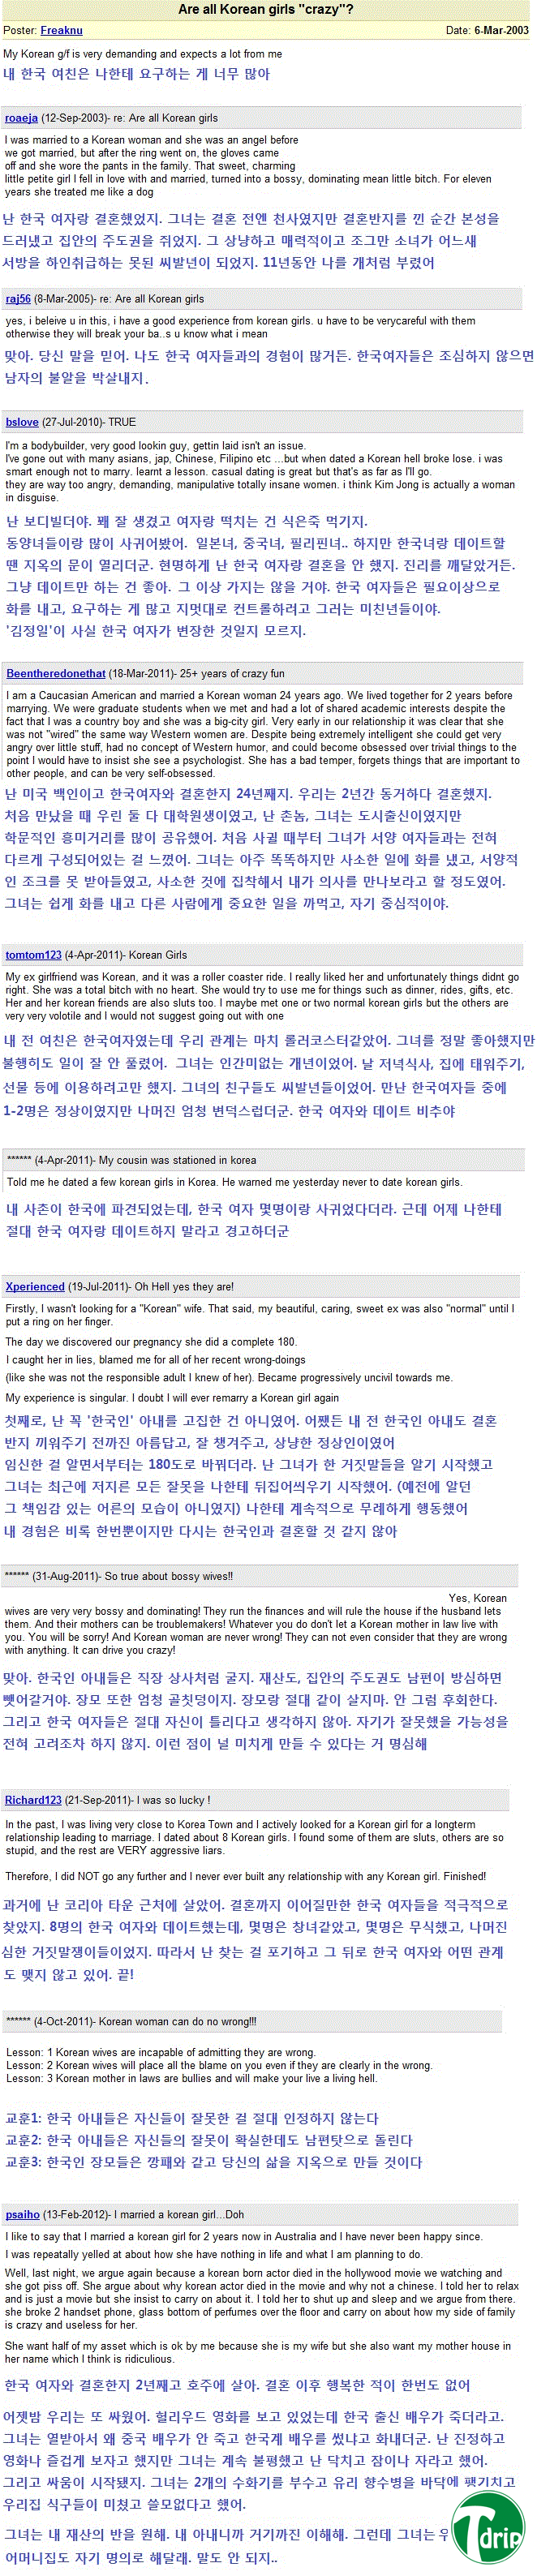 1 (2) (1).jpg : 외국남성들의 김치걸들에 대한 생각.jpg